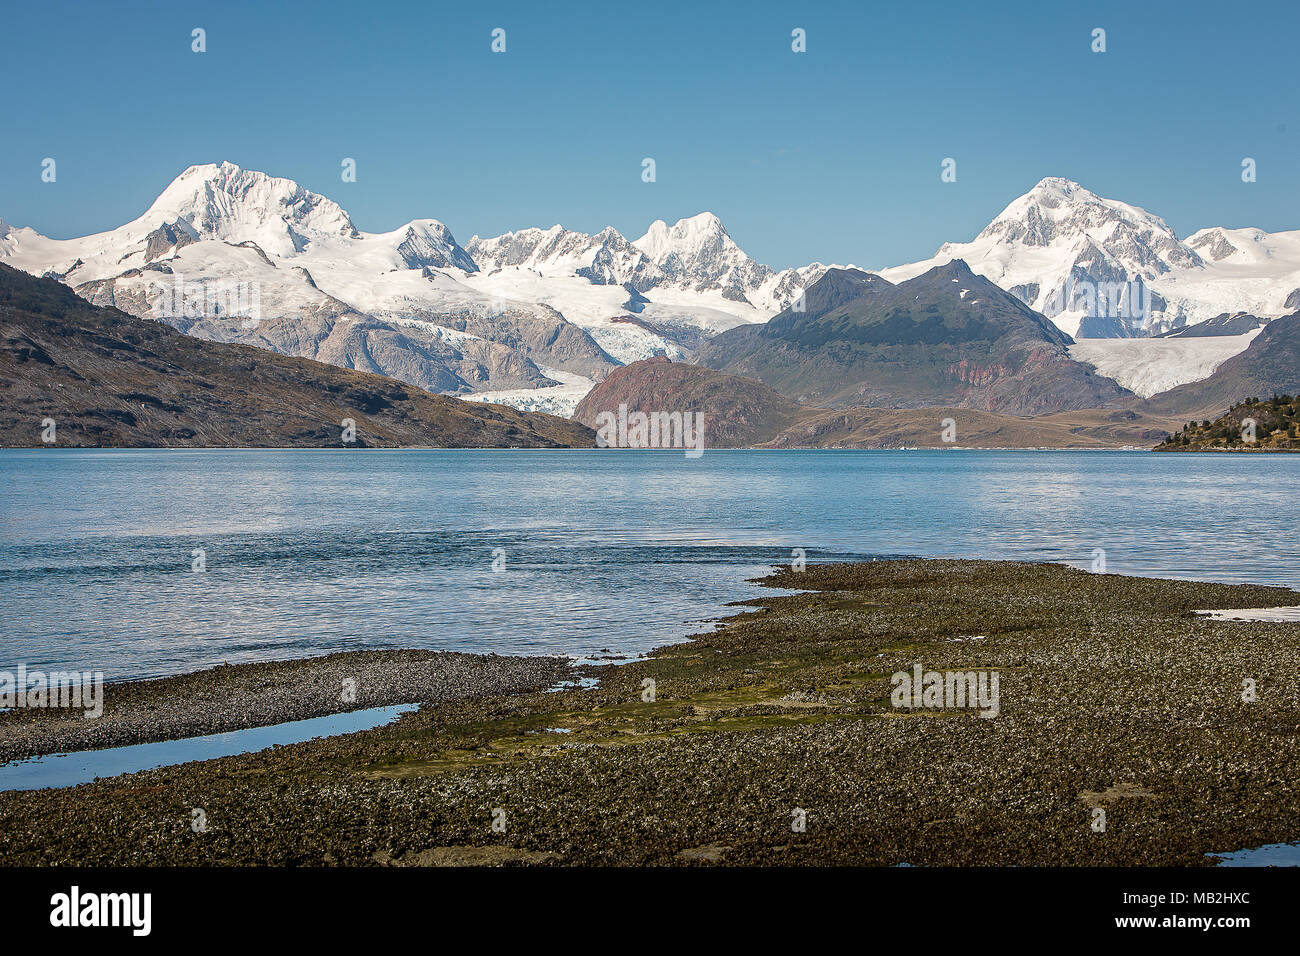 Cordillera Darwin, in Ainsworth Bay, PN Alberto de Agostini, Tierra del Fuego, Patagonia, Chile Stock Photo